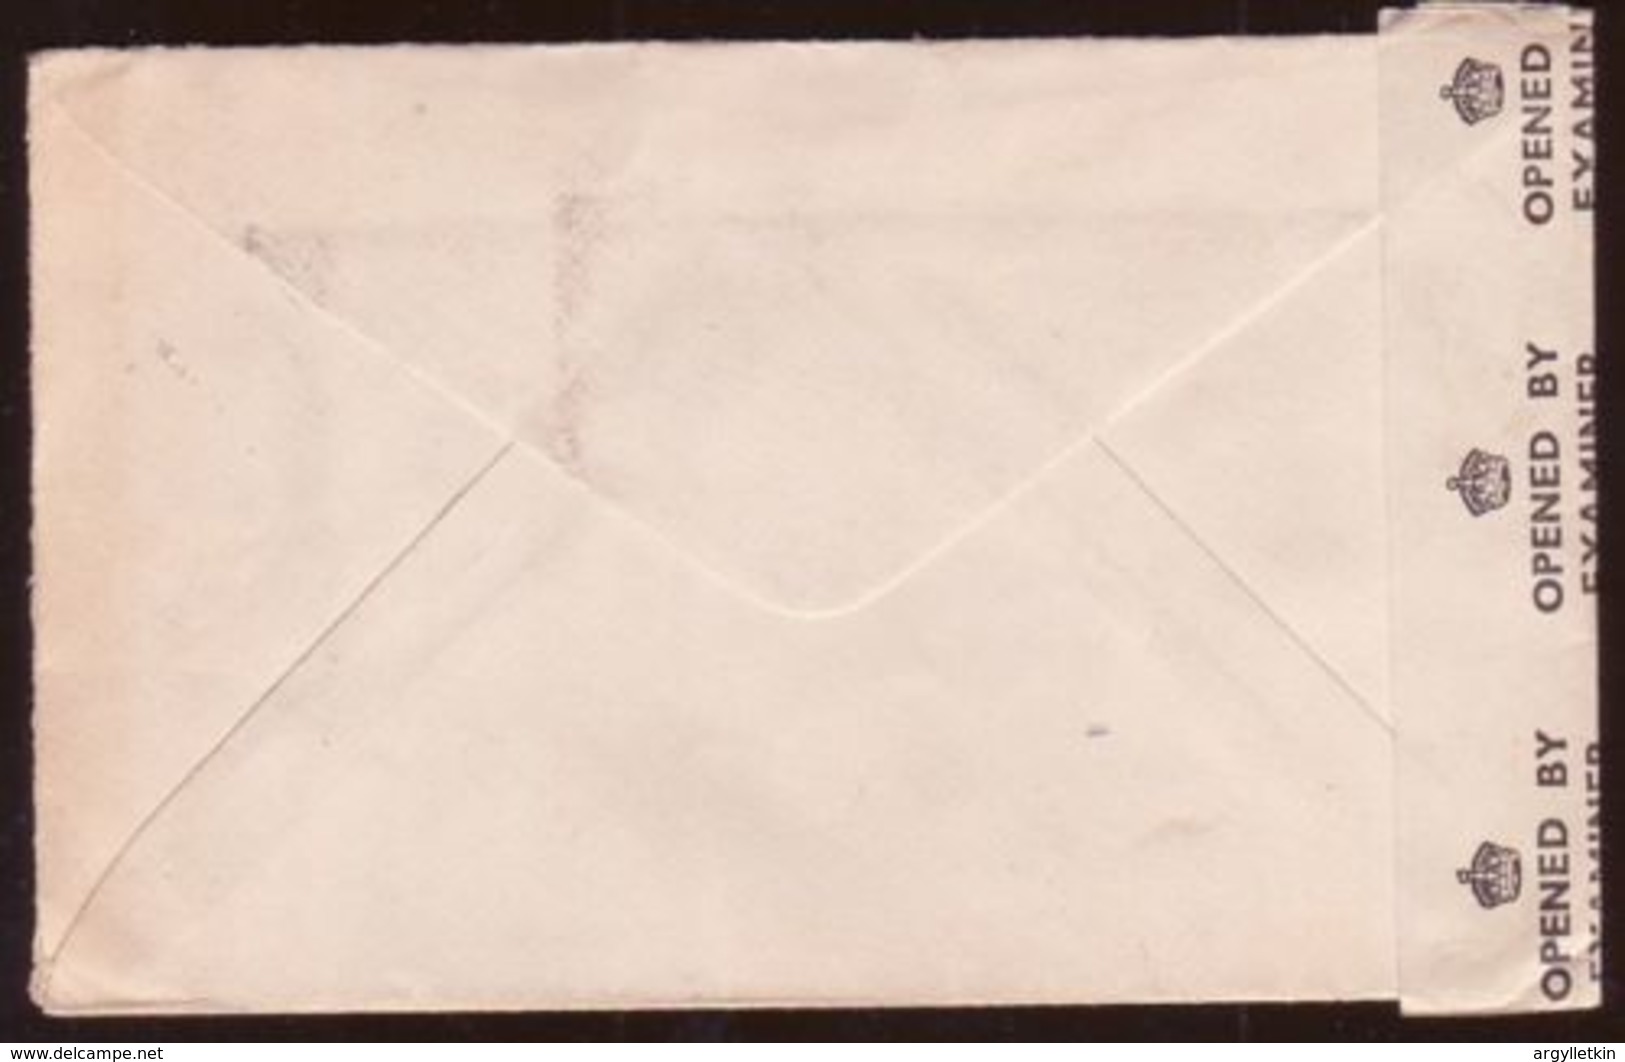 IRELAND 'HAMILTON' CENSOR COVER - Postal Stationery